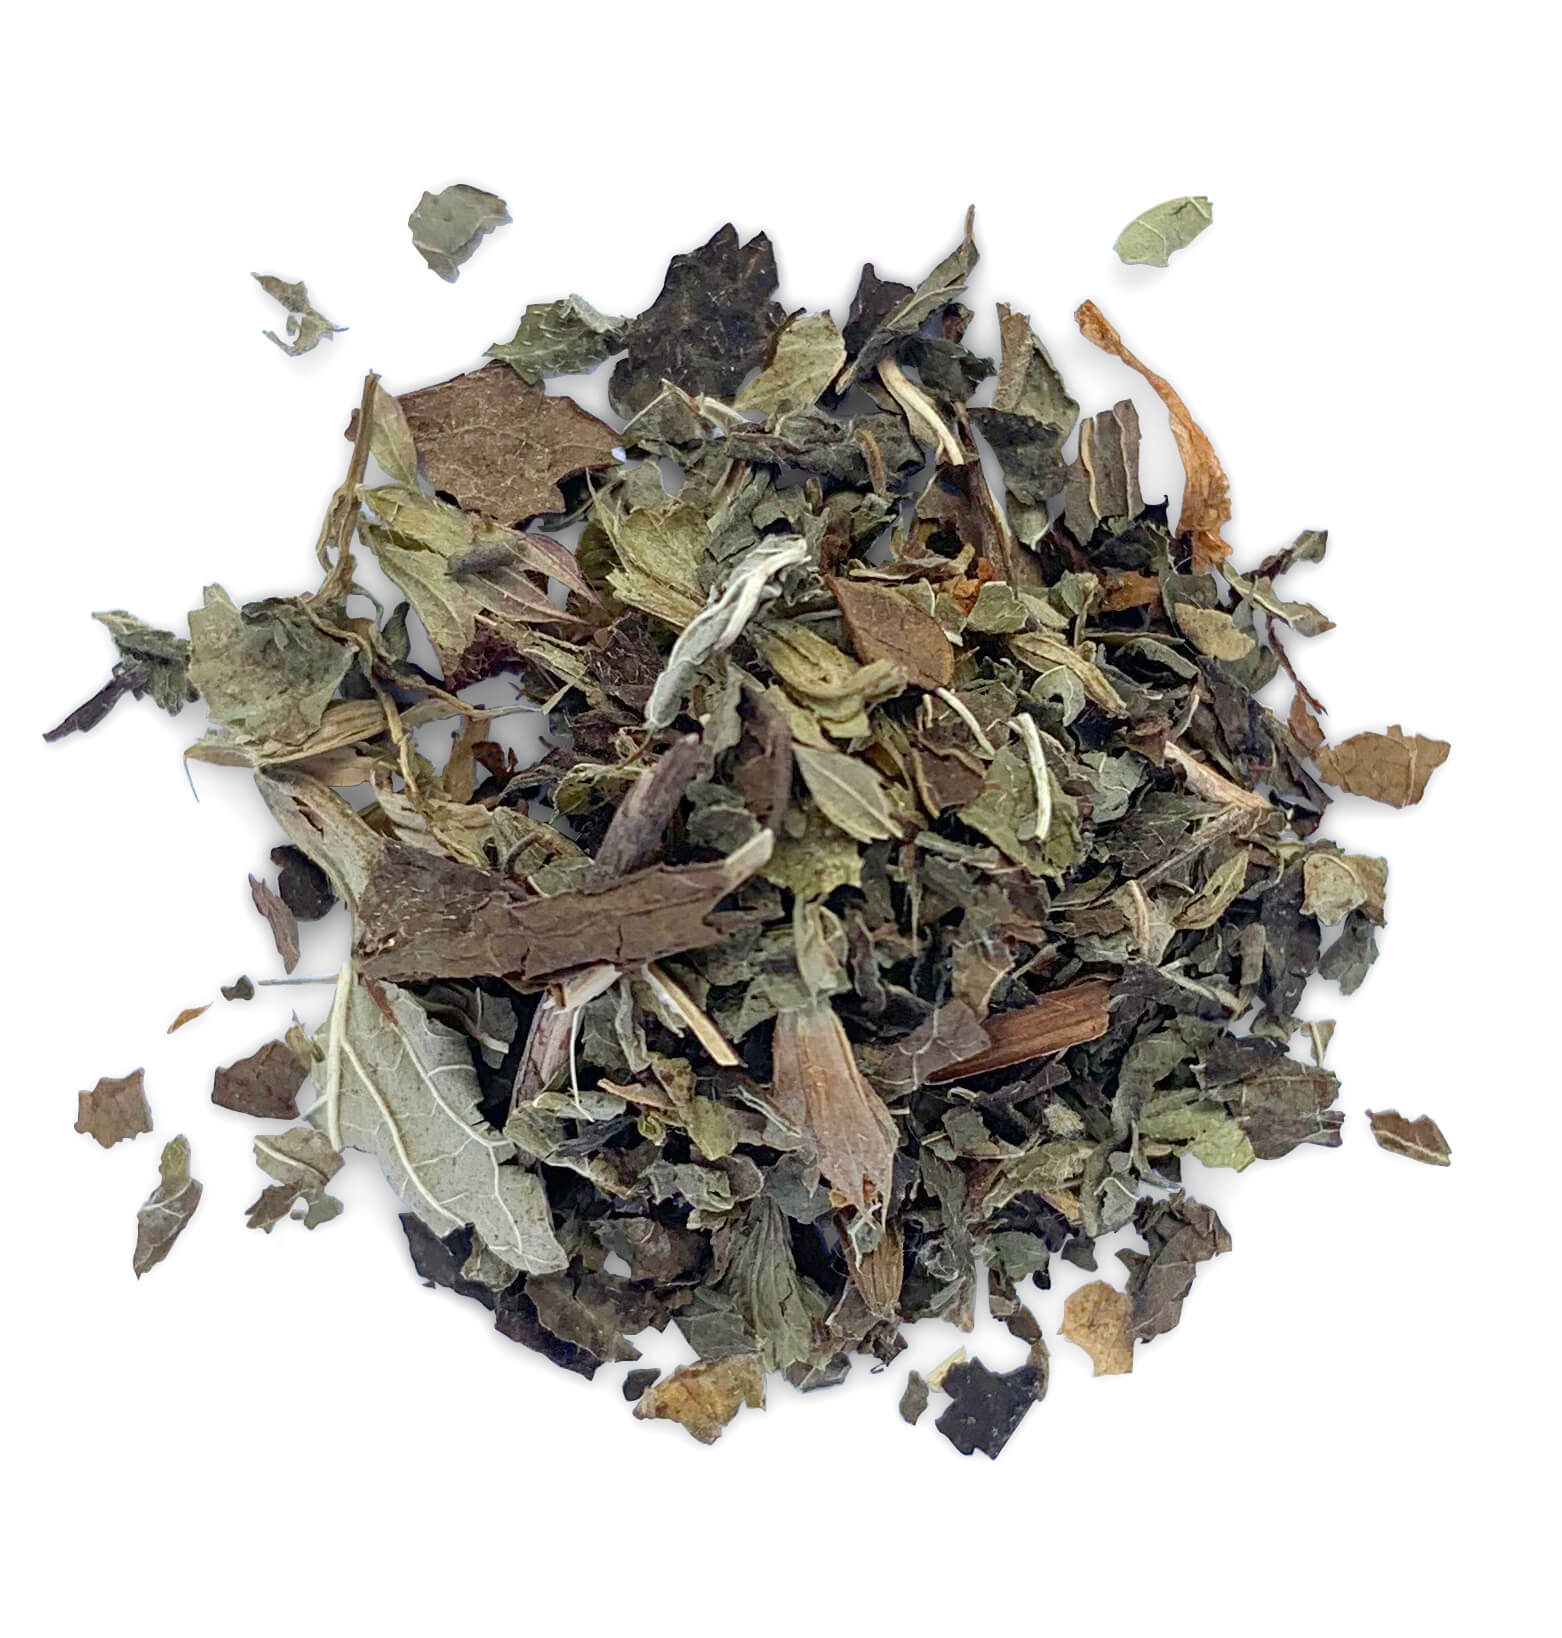 Bulk Herbs, Bulk Spices and Bulk Herbal Teas